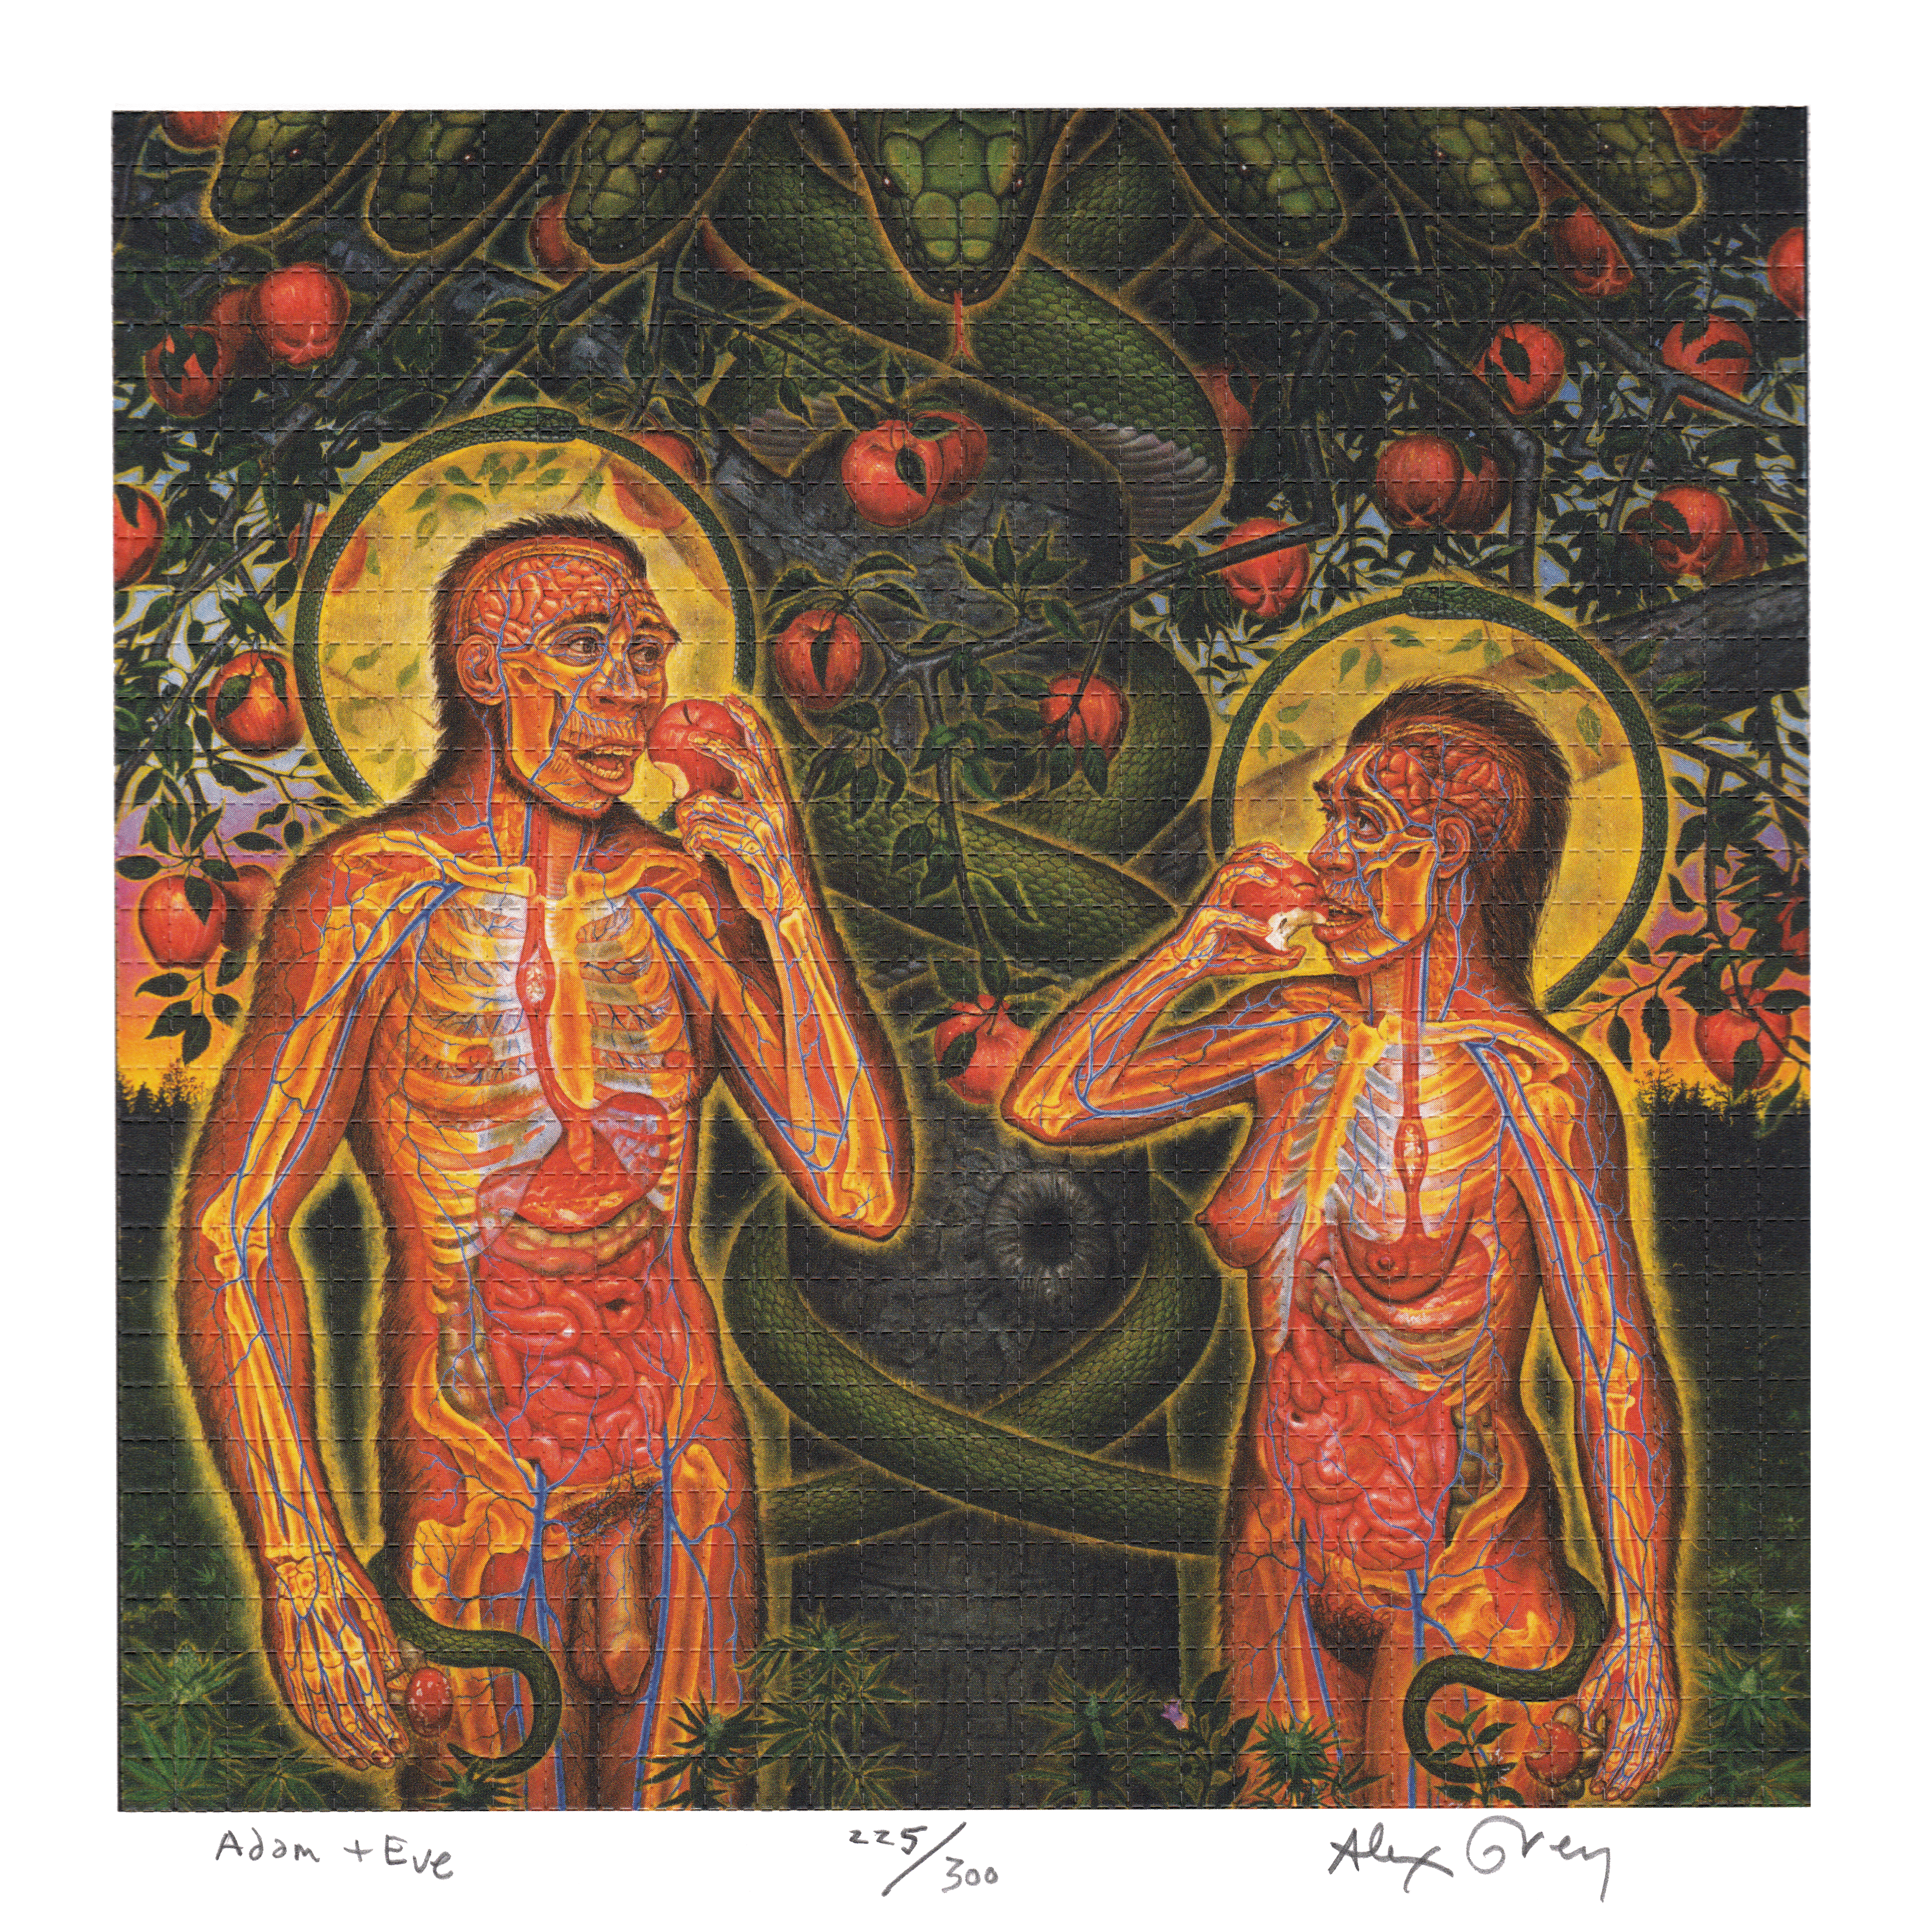 Adam & Eve by Alex Grey as LSD Blotter Art #225/300